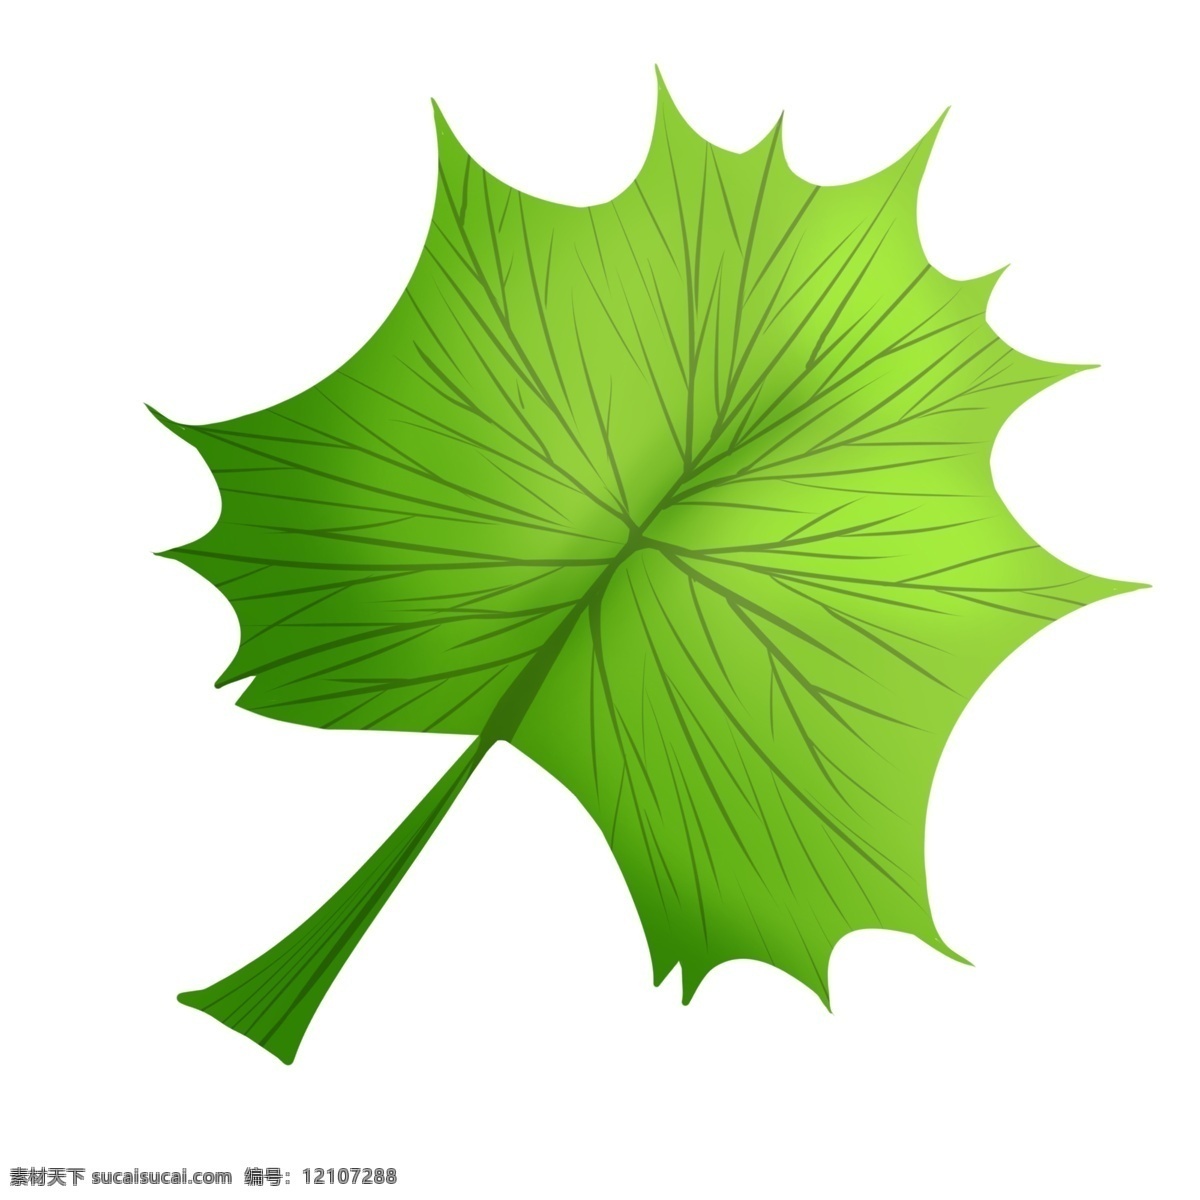 片 绿色 枫叶 插画 漂亮的枫叶 植物 绿色叶子 叶子植物 一片枫叶 绿色枫叶 枫叶插画